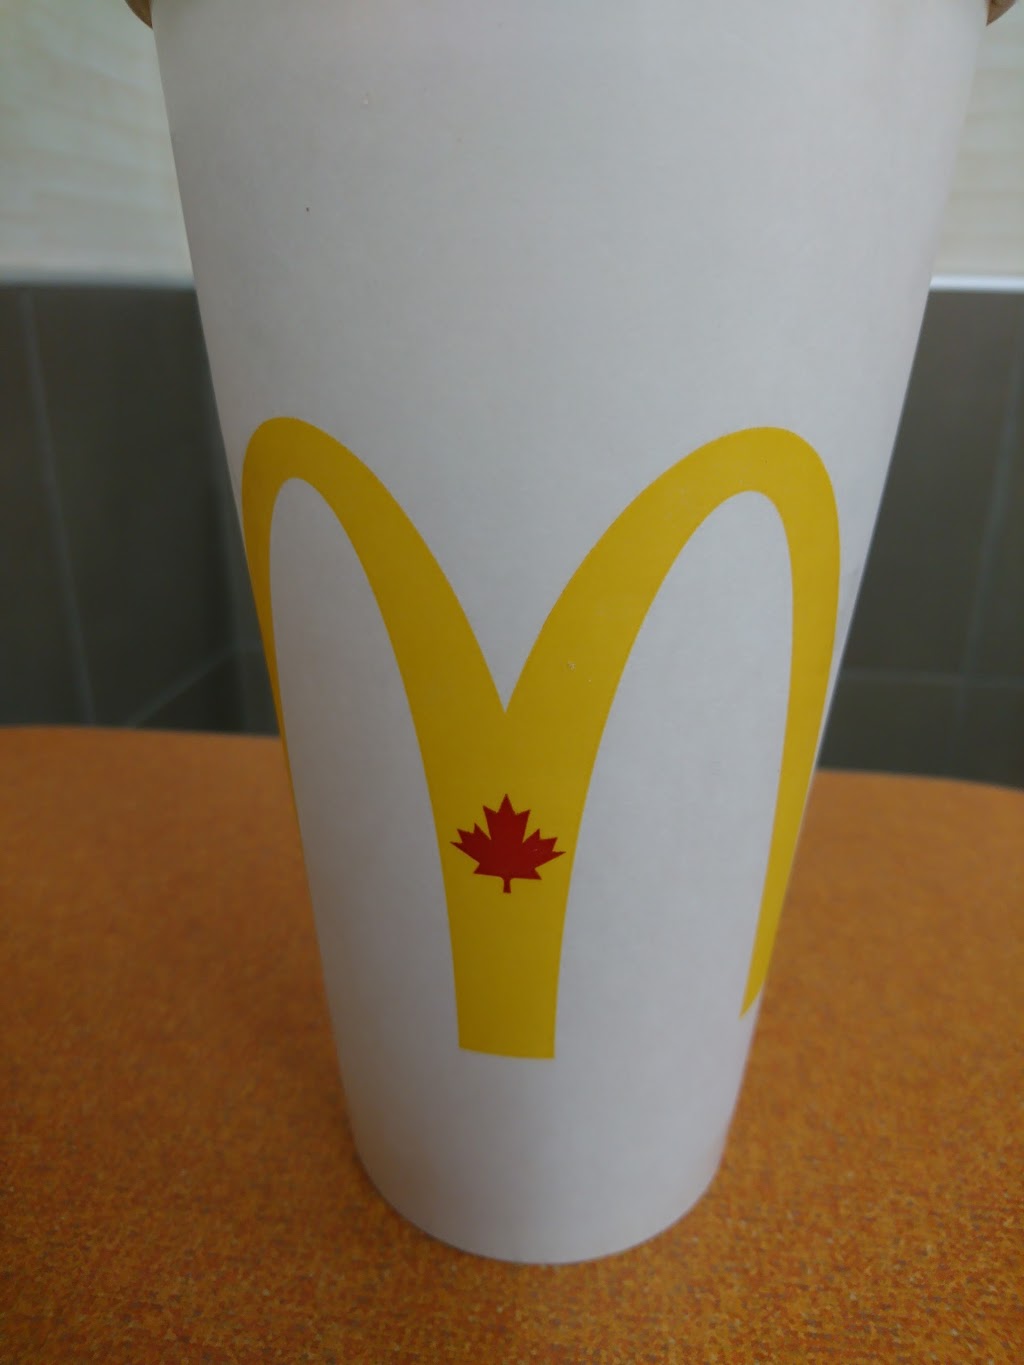 McDonalds | 3050 Autoroute Félix-Leclerc, Vaudreuil-Dorion, QC J7V 0H1, Canada | Phone: (450) 424-4059